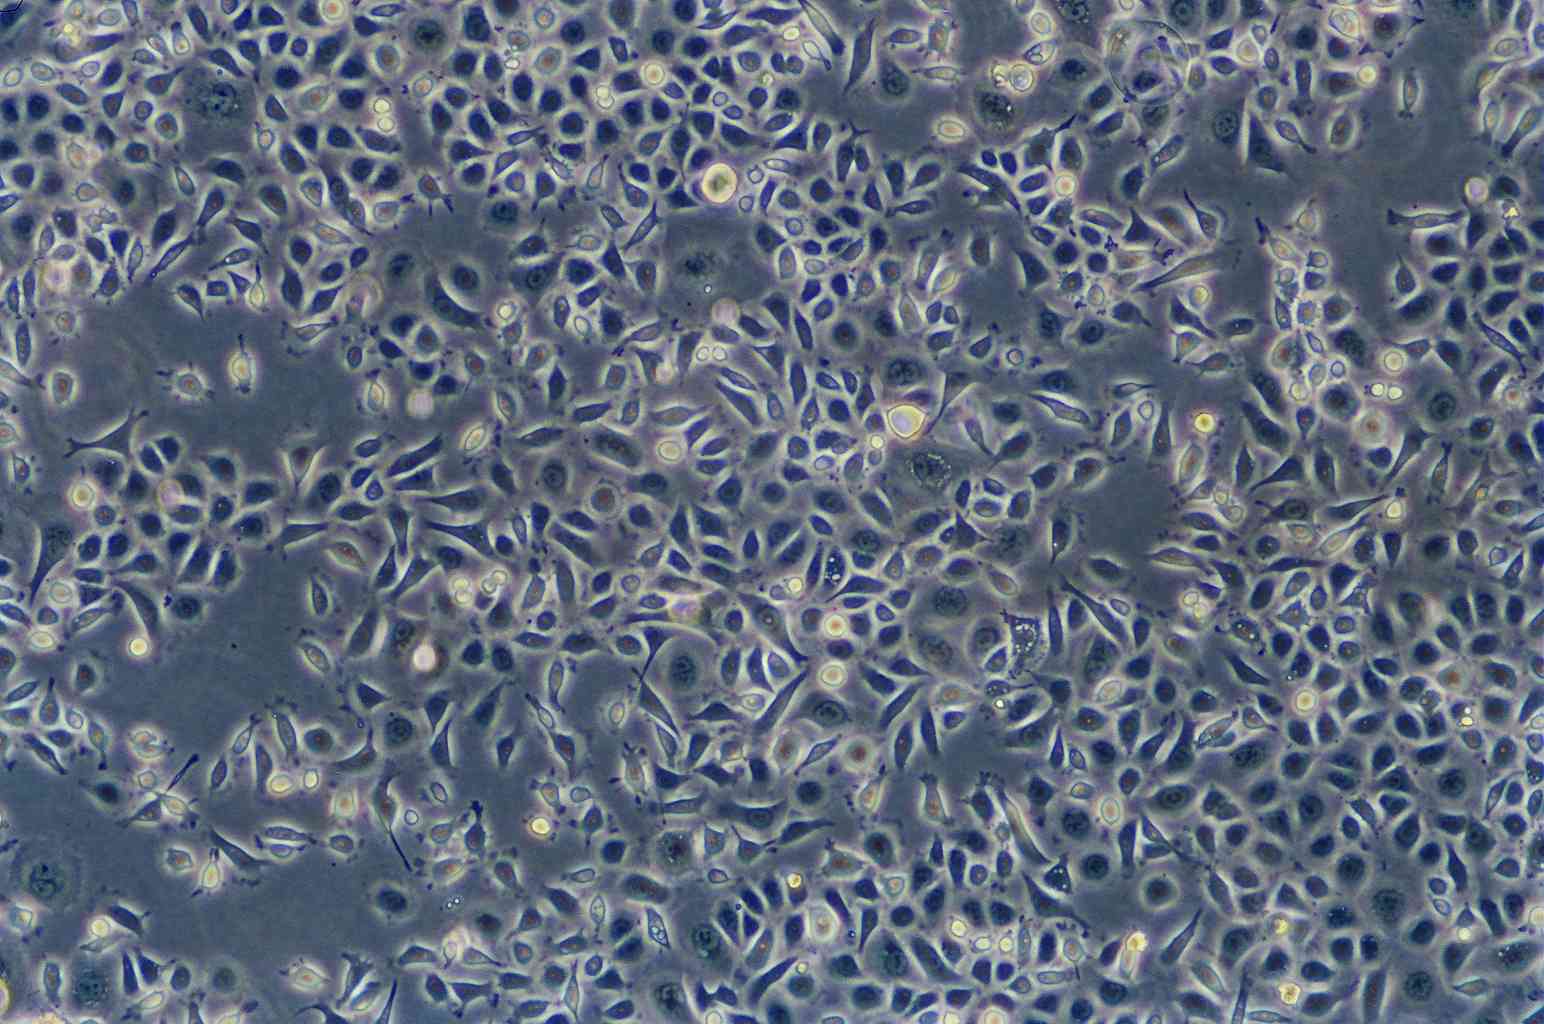 MuM-2B Cells|人眼脉络黑色素瘤可传代细胞系